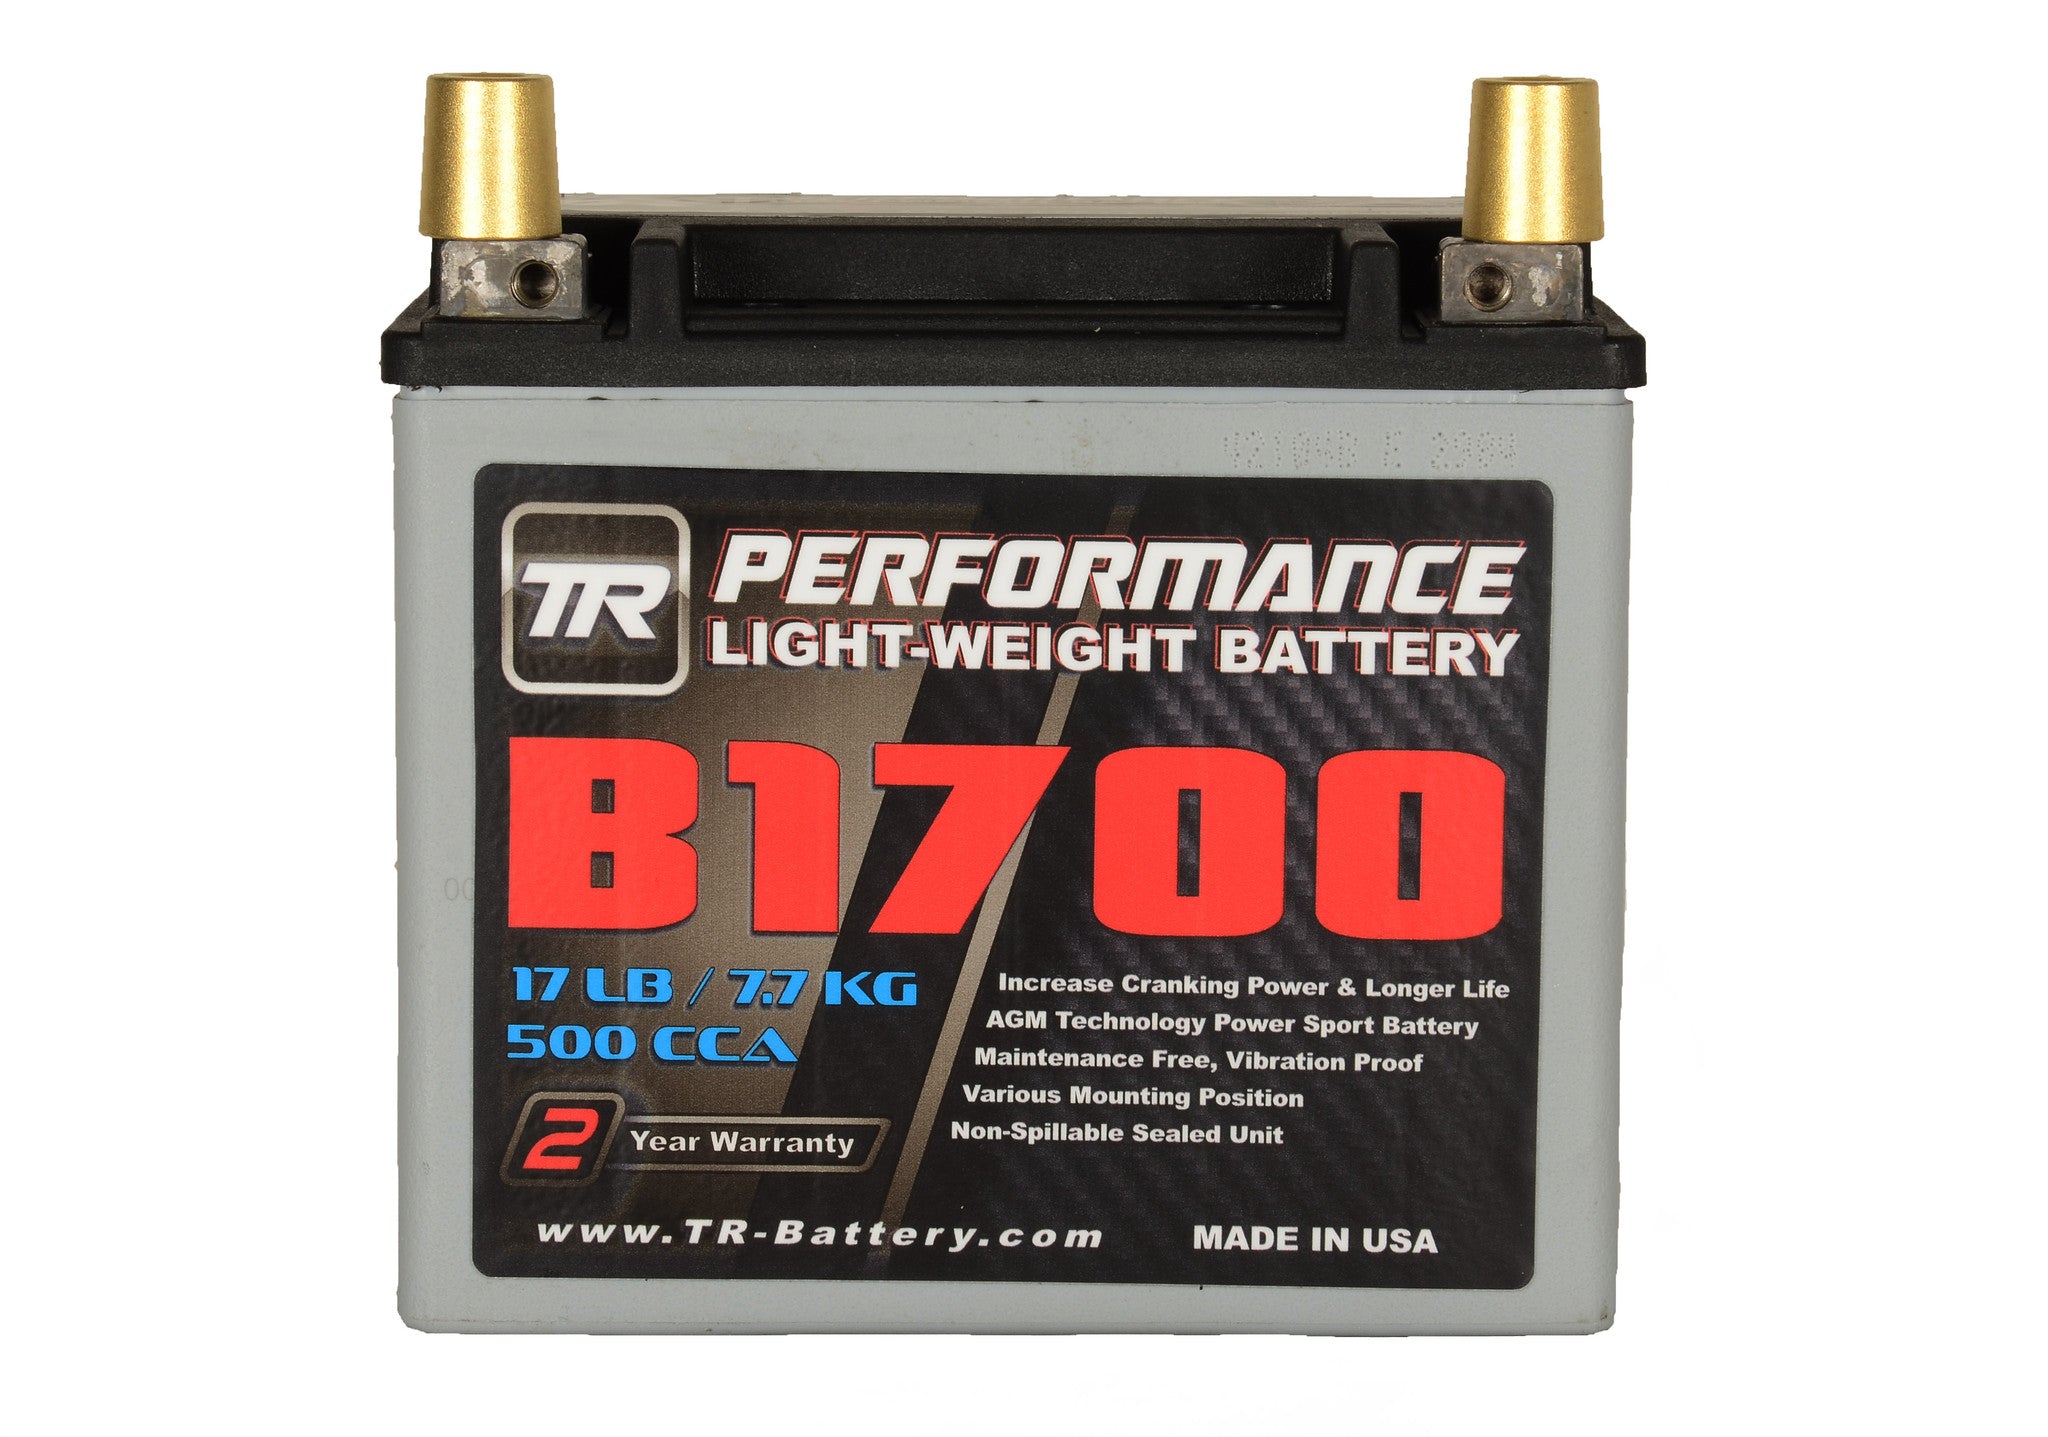 TR-B1700 Lightweight Battery